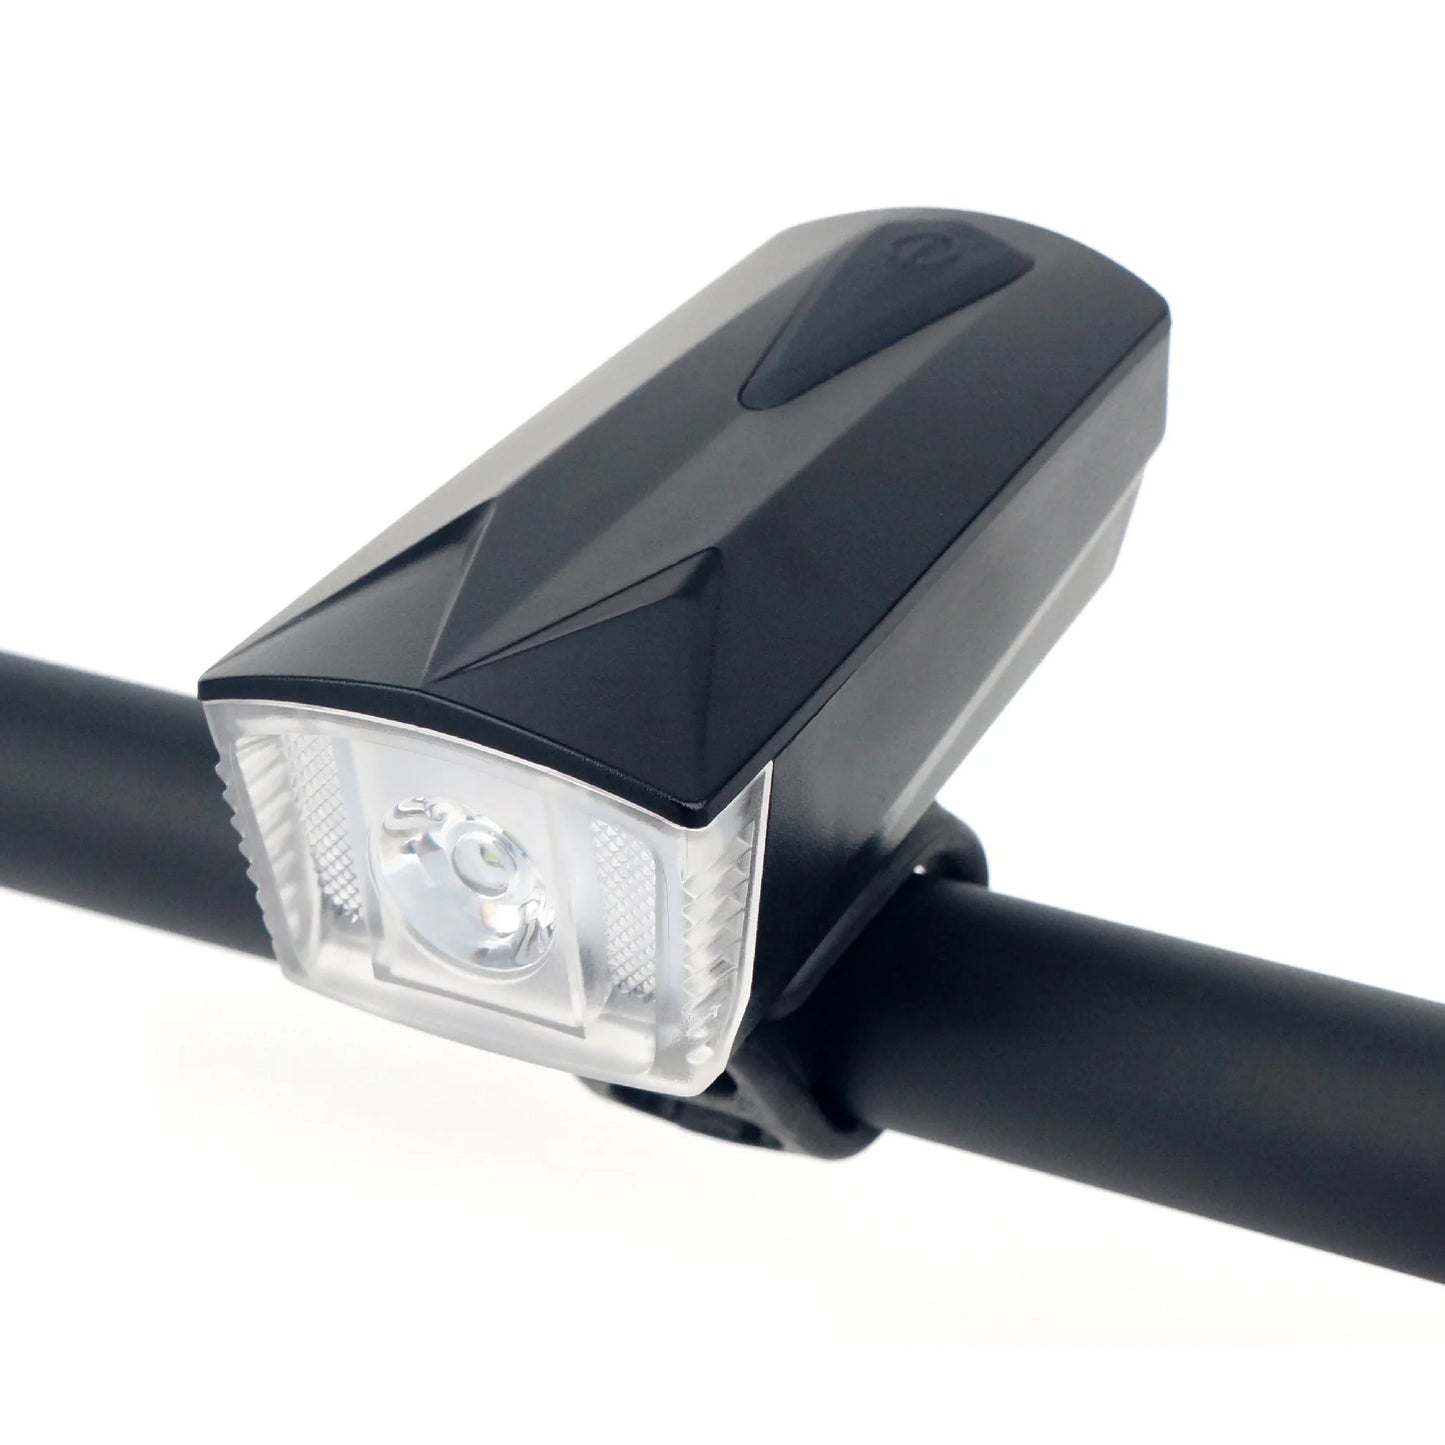 Lanternă frontală bicicletă MK-8216